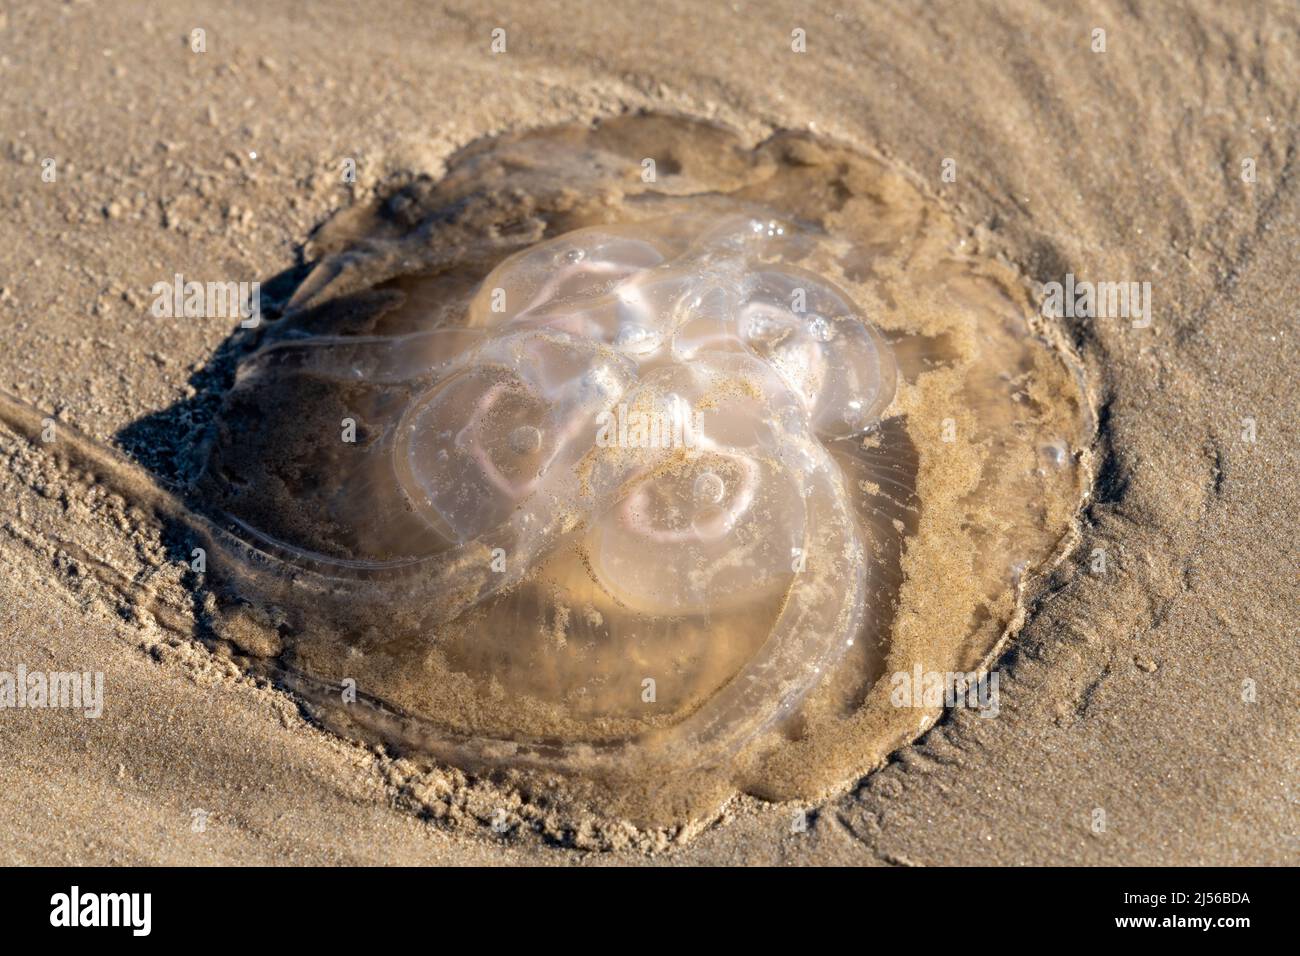 Una medusa de la Luna, Aurelia aurita, lavada en la playa en South Padre Island, Texas. Foto de stock